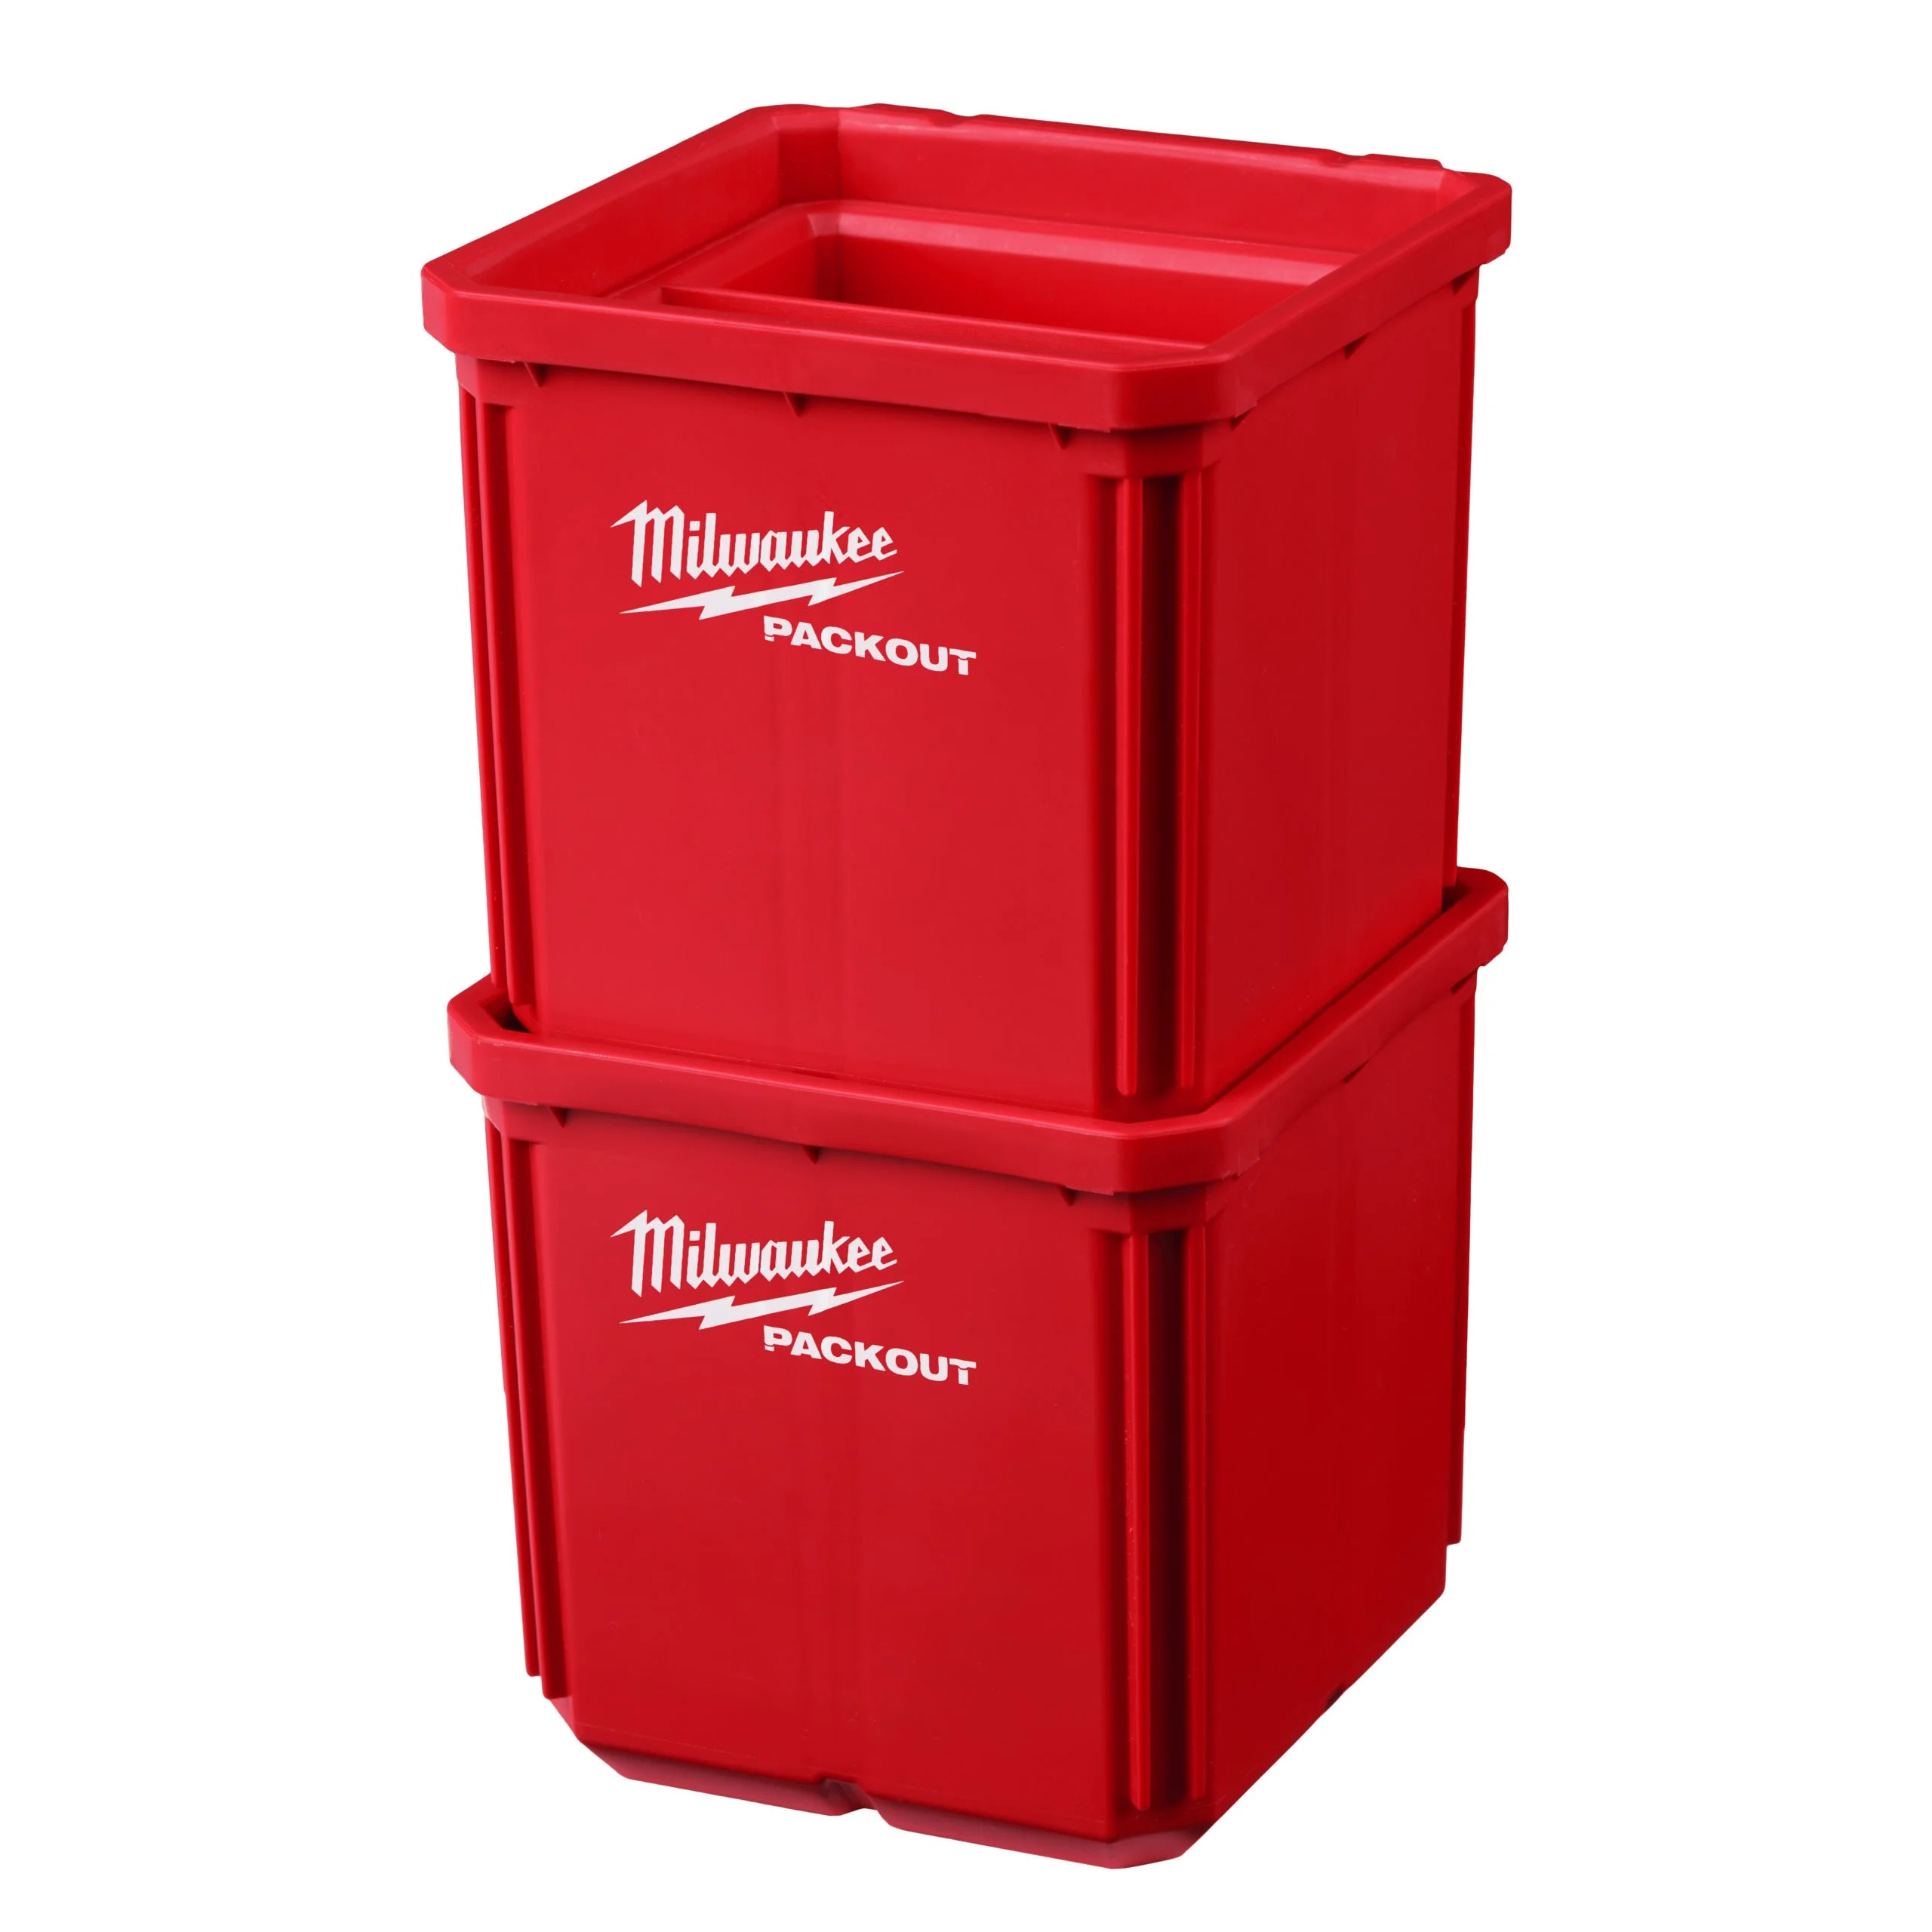 Milwaukee Packout Behälter 10 x 10 cm (2er Set)